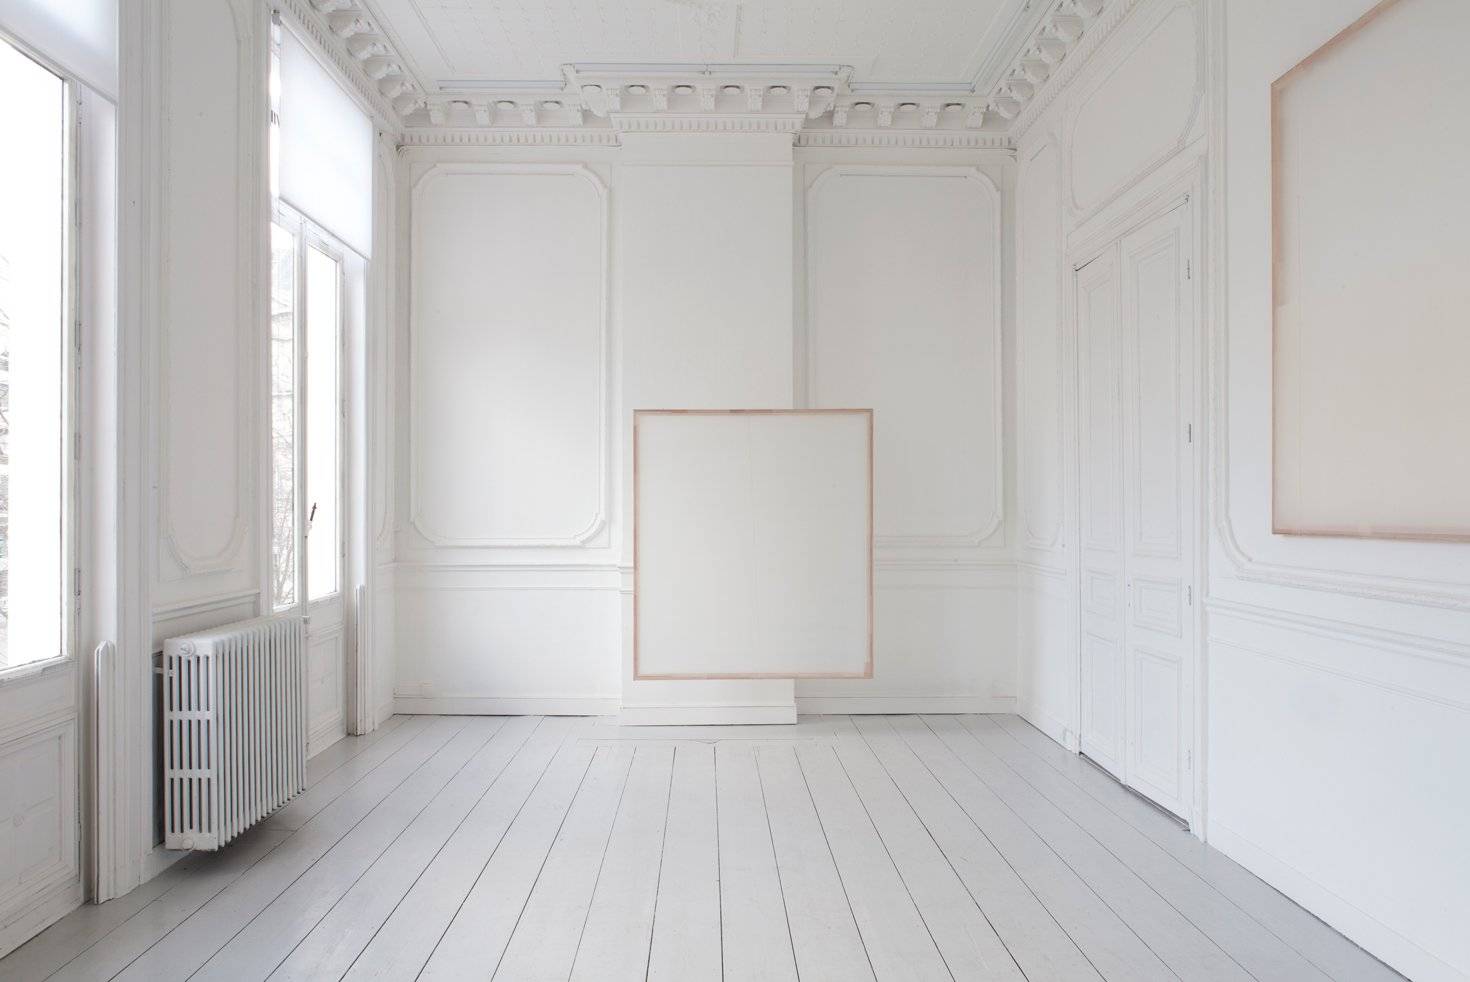 Обои белые для стен: как избежать монотонности и сохранить пространство?